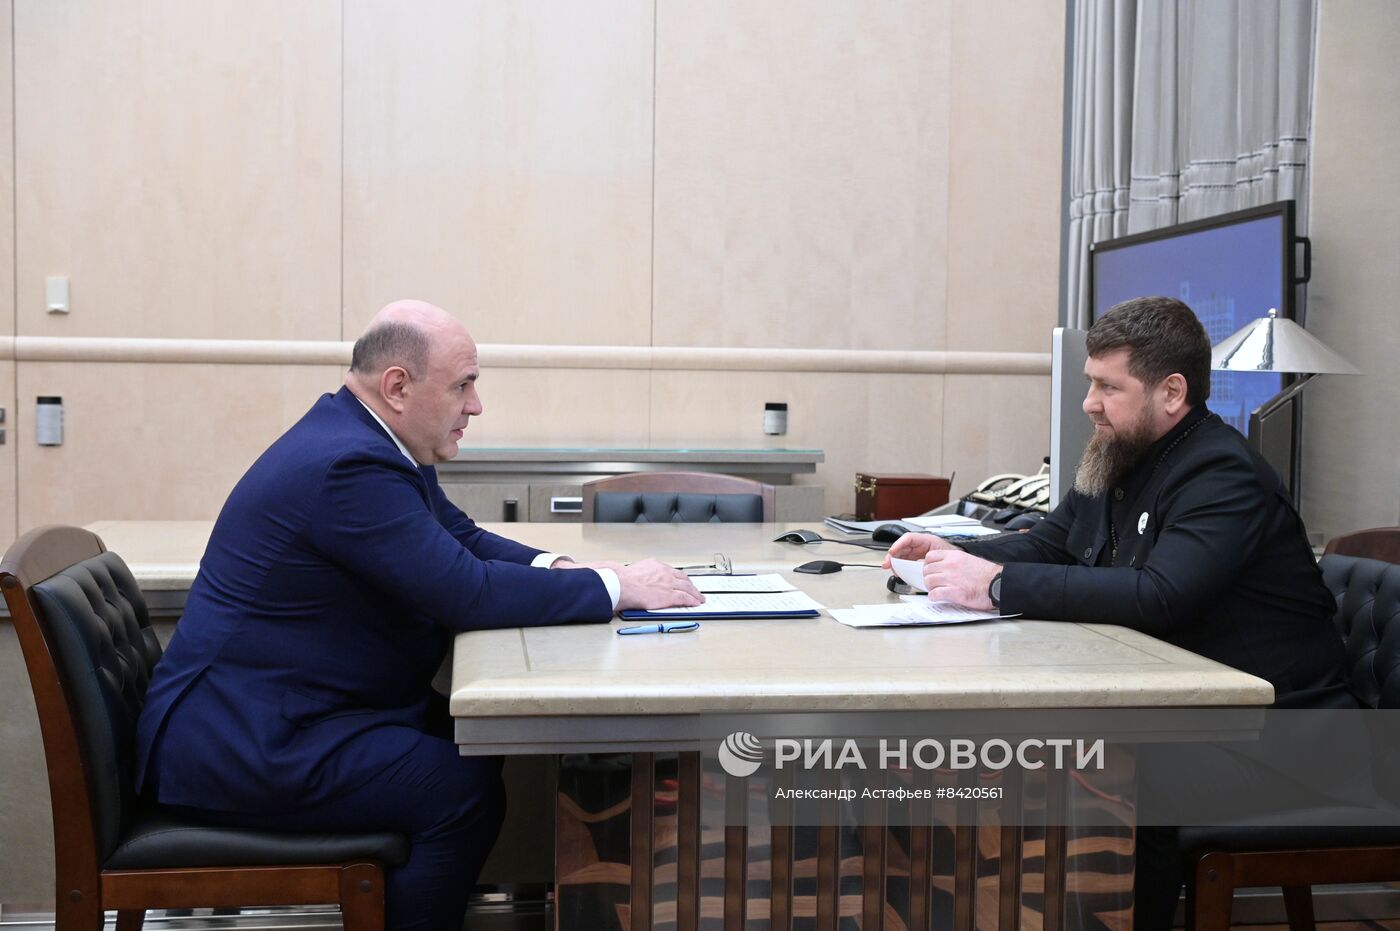 Премьер-министр РФ М. Мишустин встретился с главой Чечни Р. Кадыровым